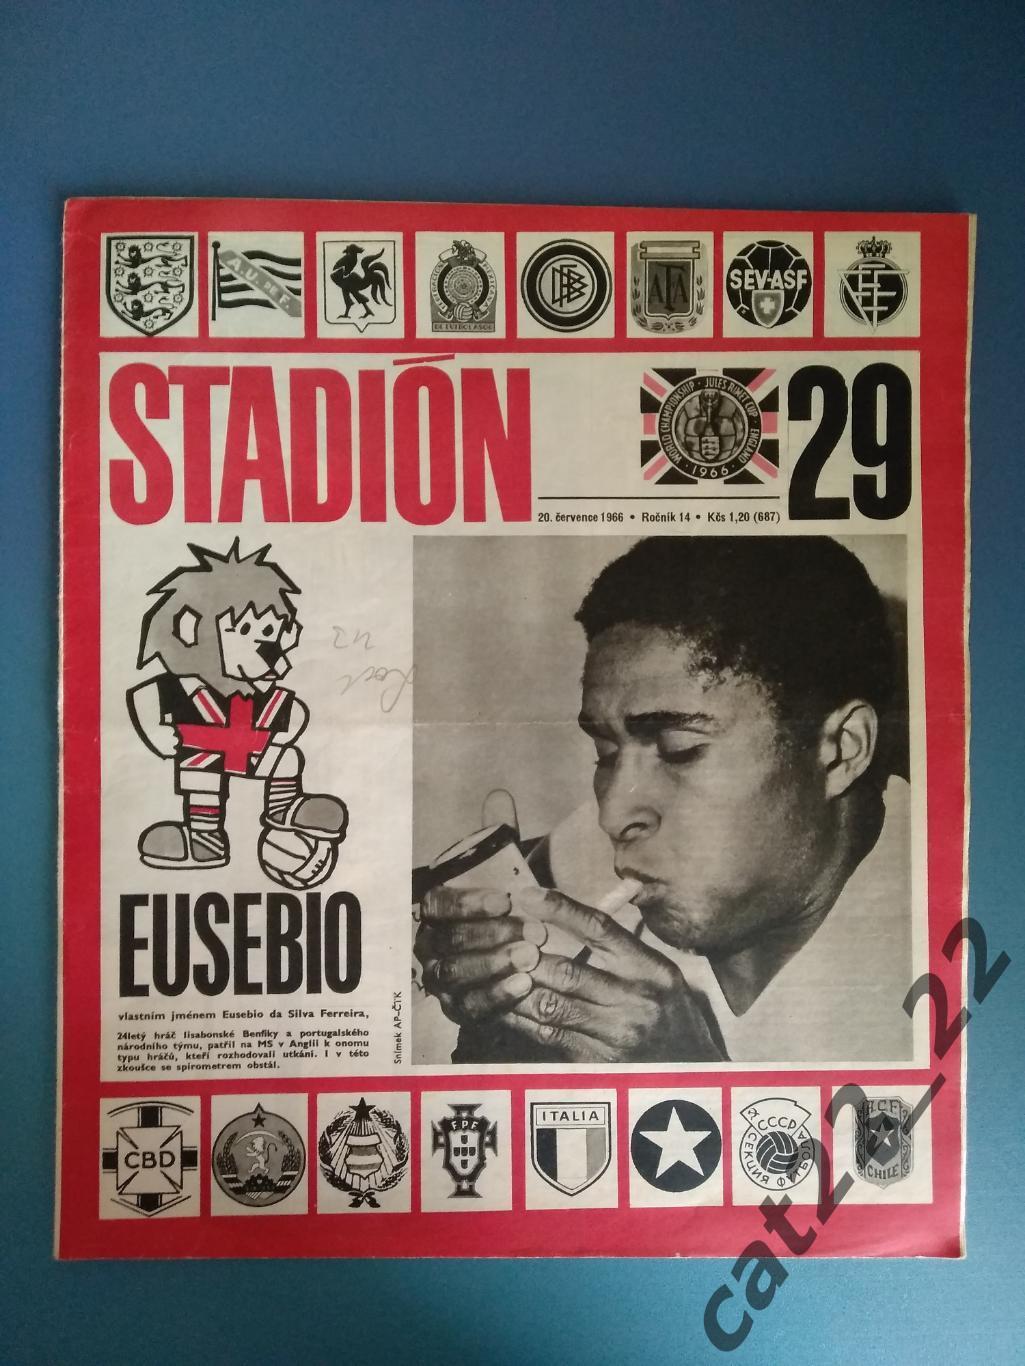 Журнал Стадион/Stadion. Полный номер. Чемпионат мира. Эйсебио Португалия 29 1966